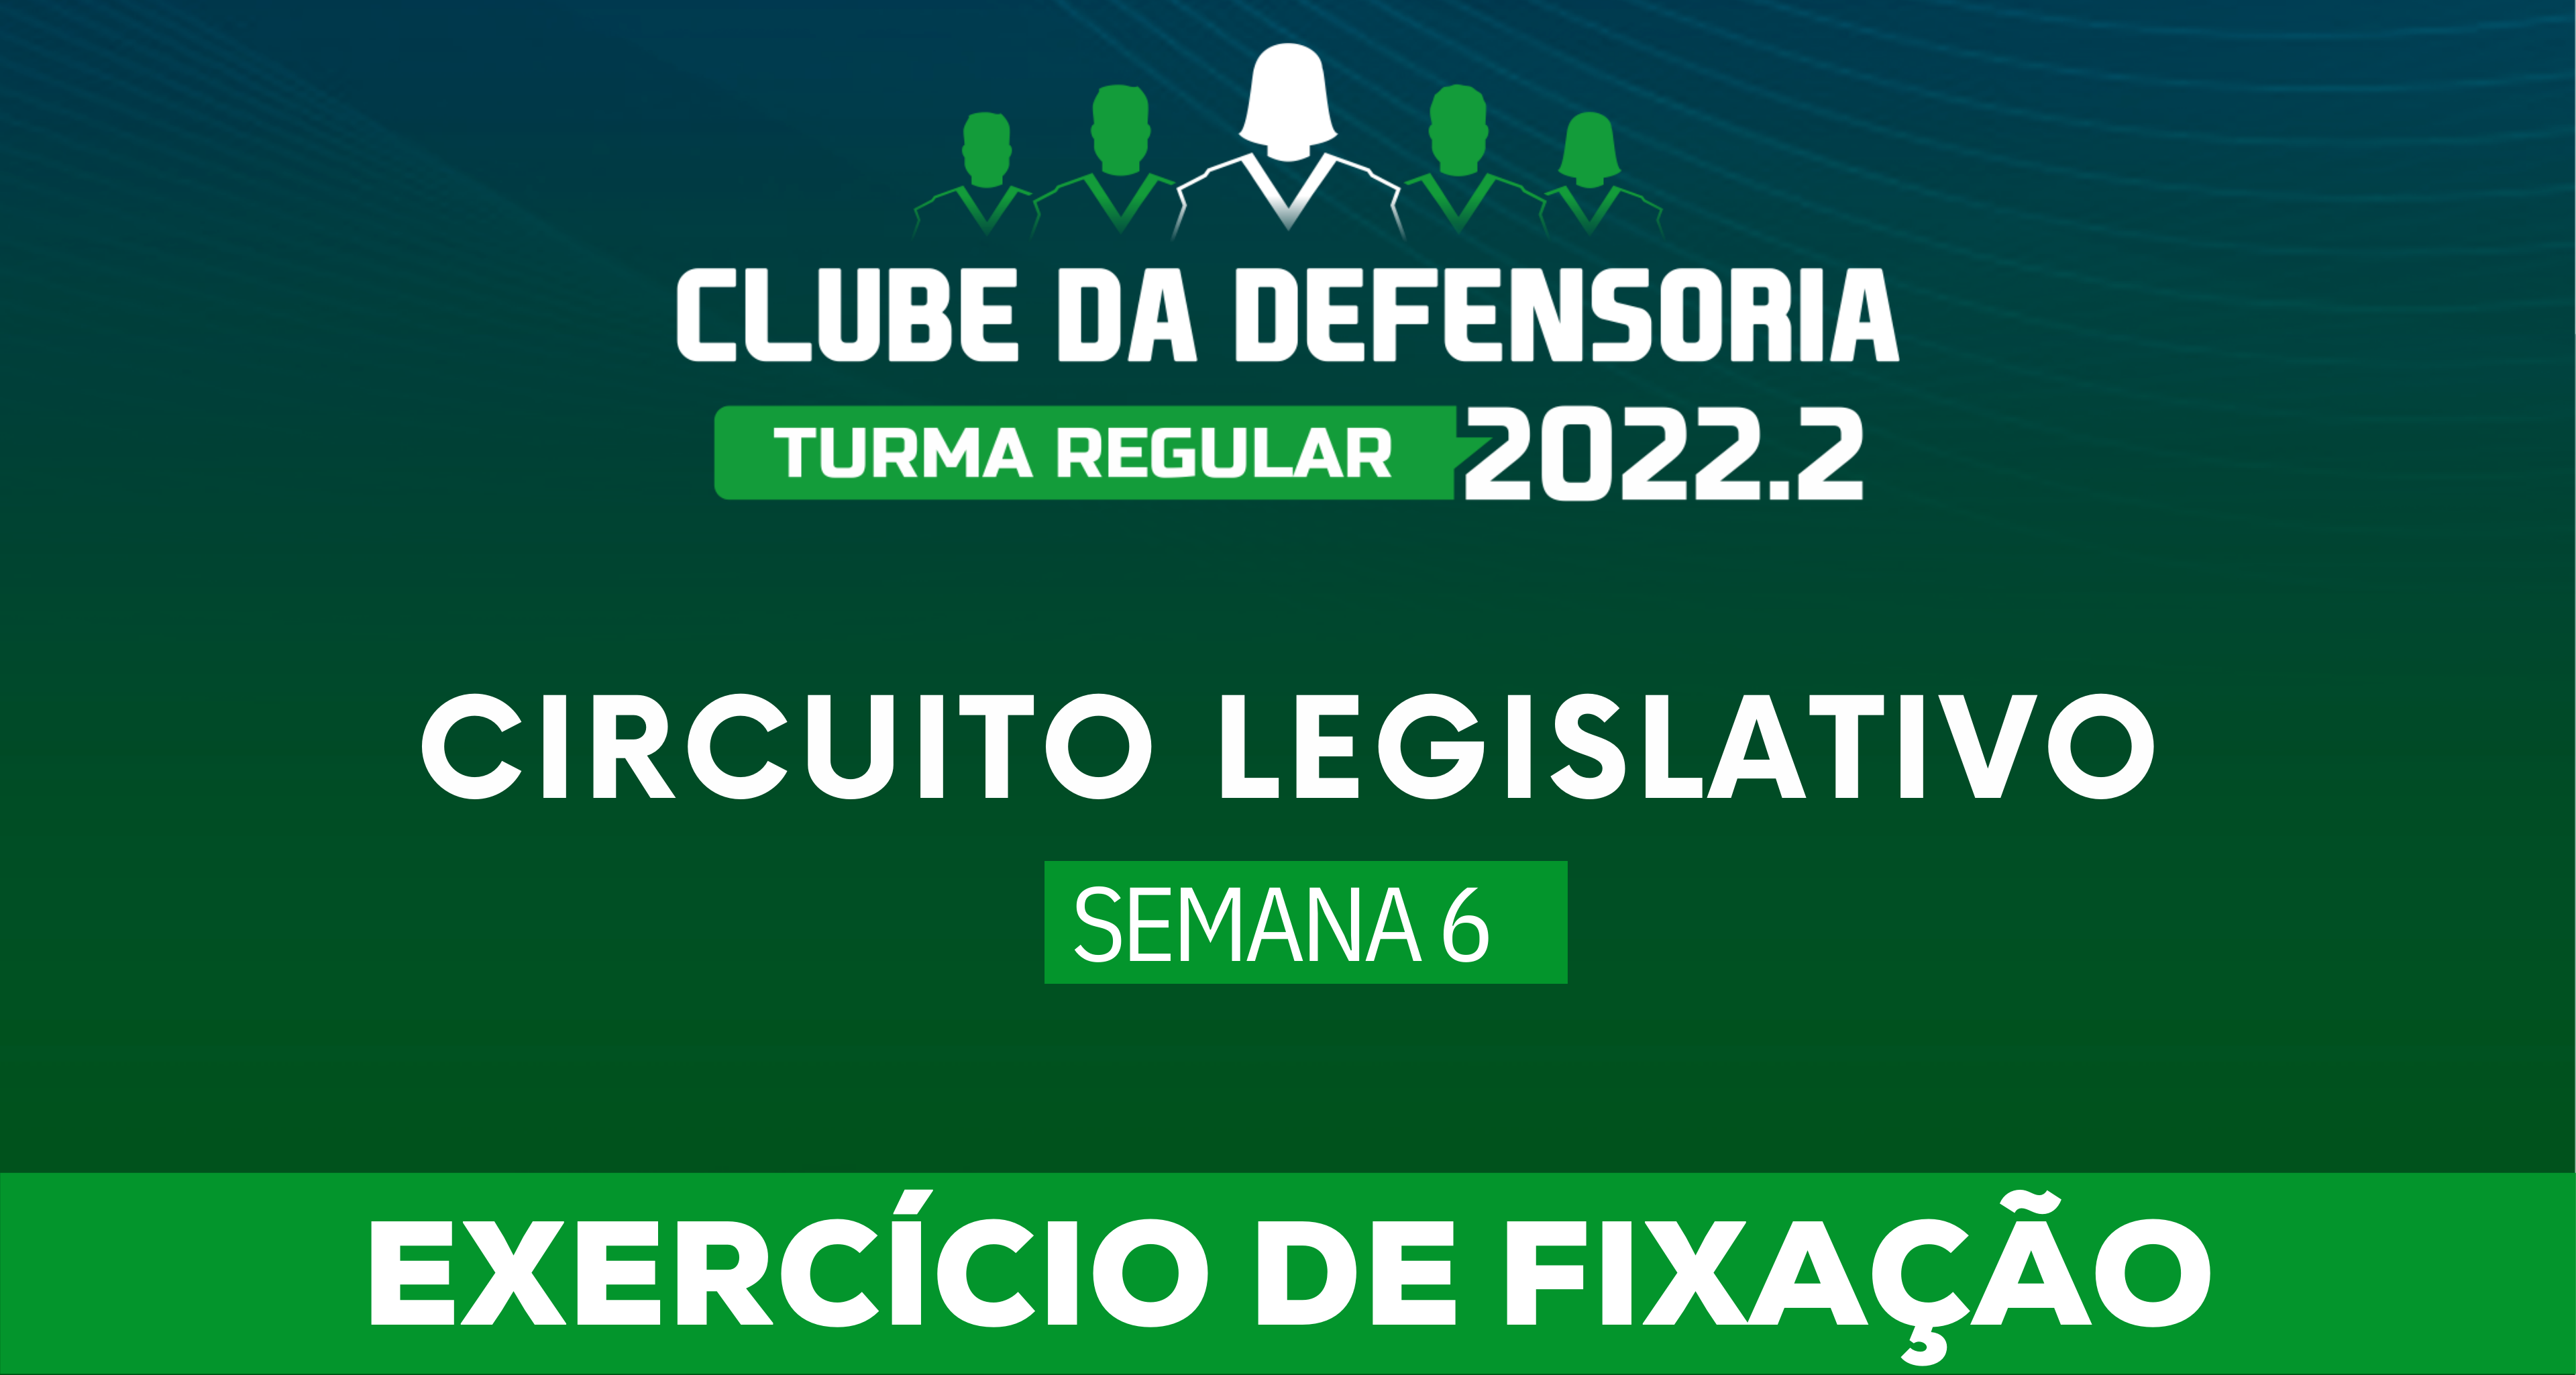 Circuito Legislativo 2022.2 (Clube da Defensoria - Semana 6)